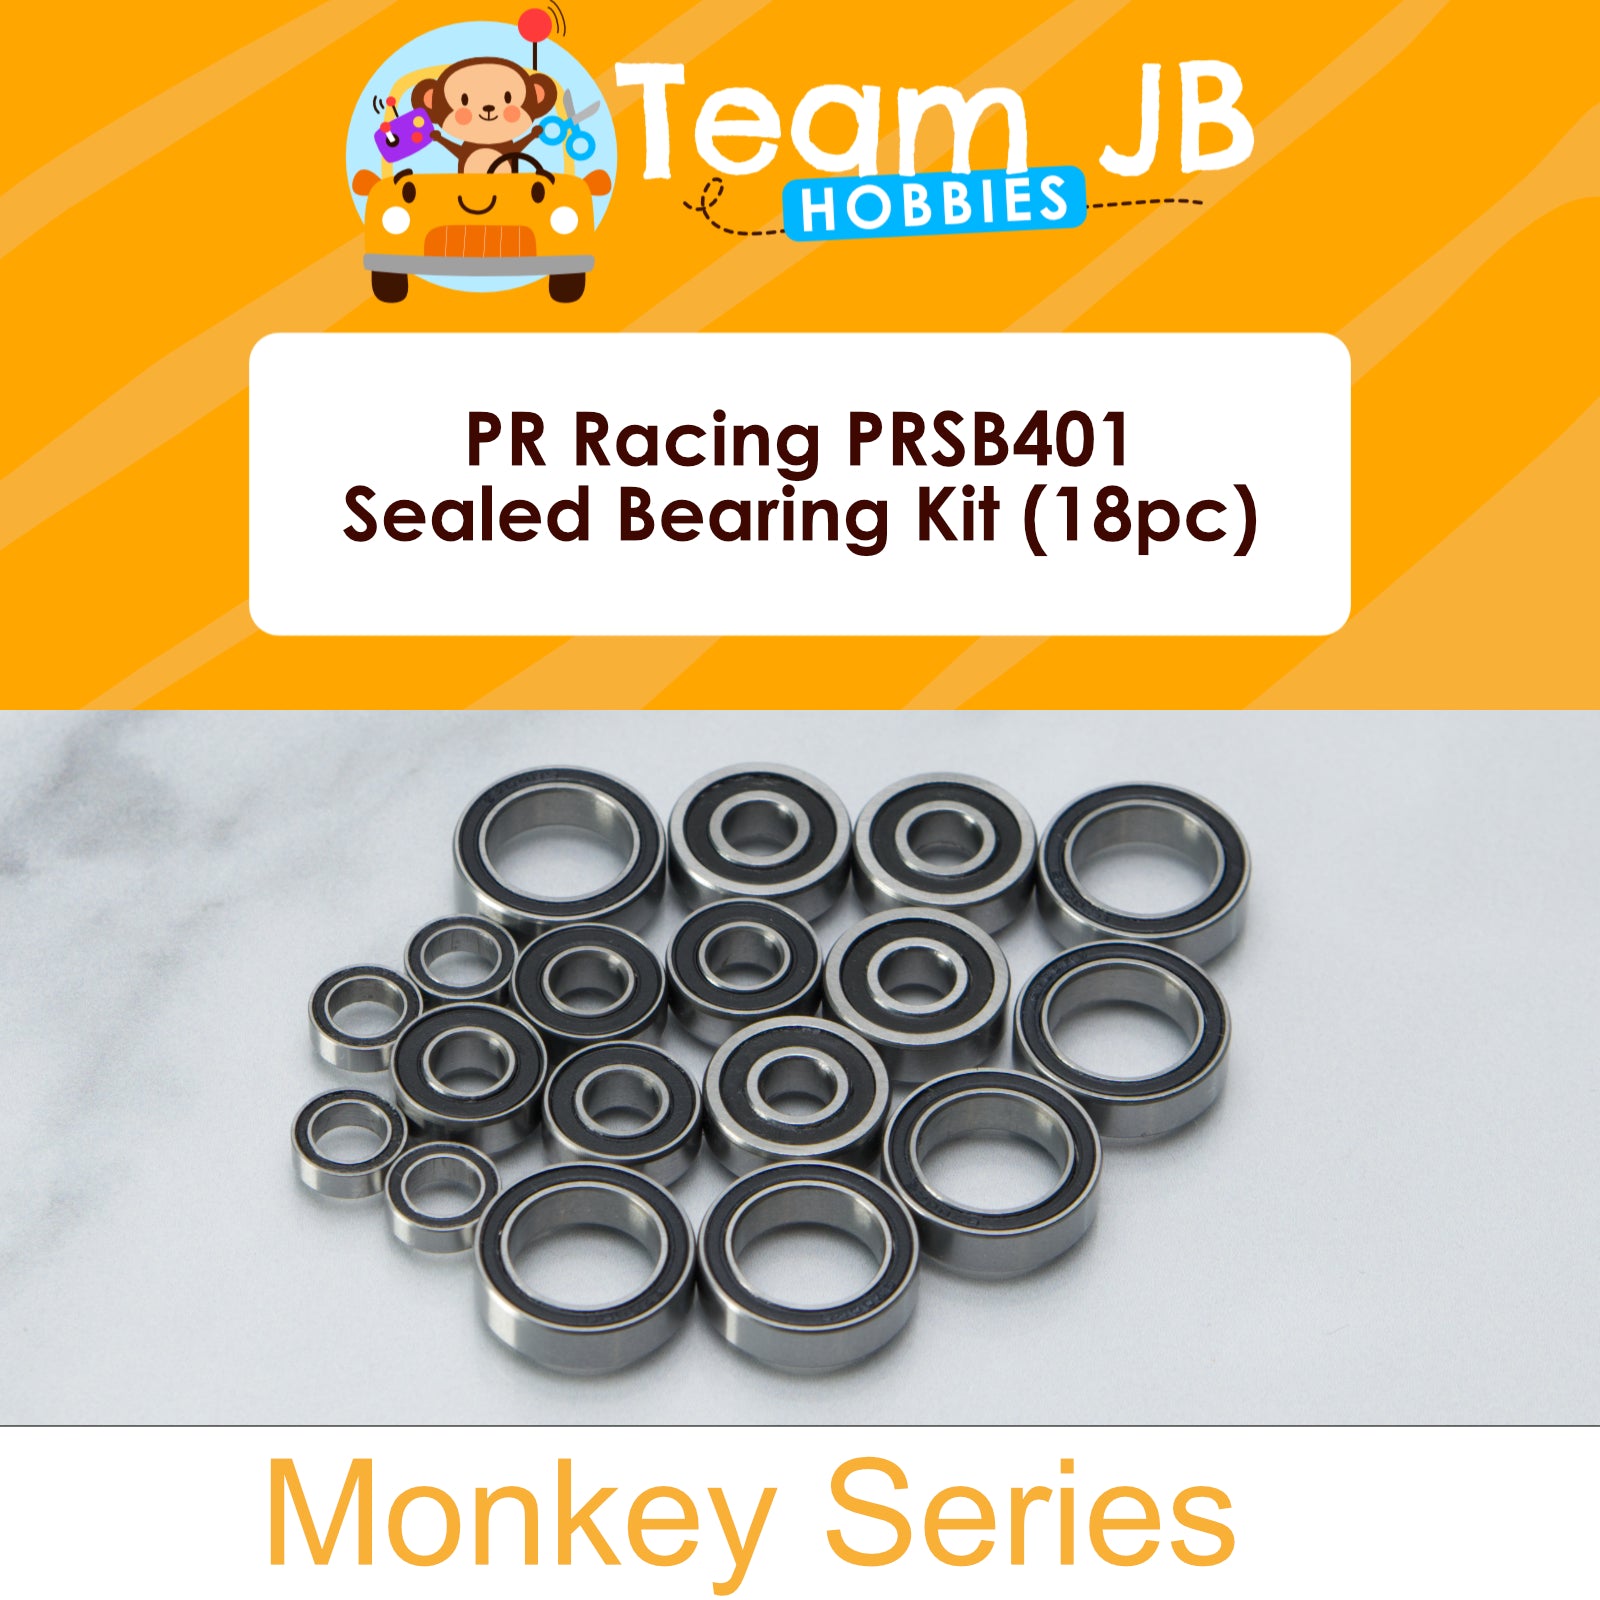 PR Racing PRSB401 - Sealed Bearing Kit